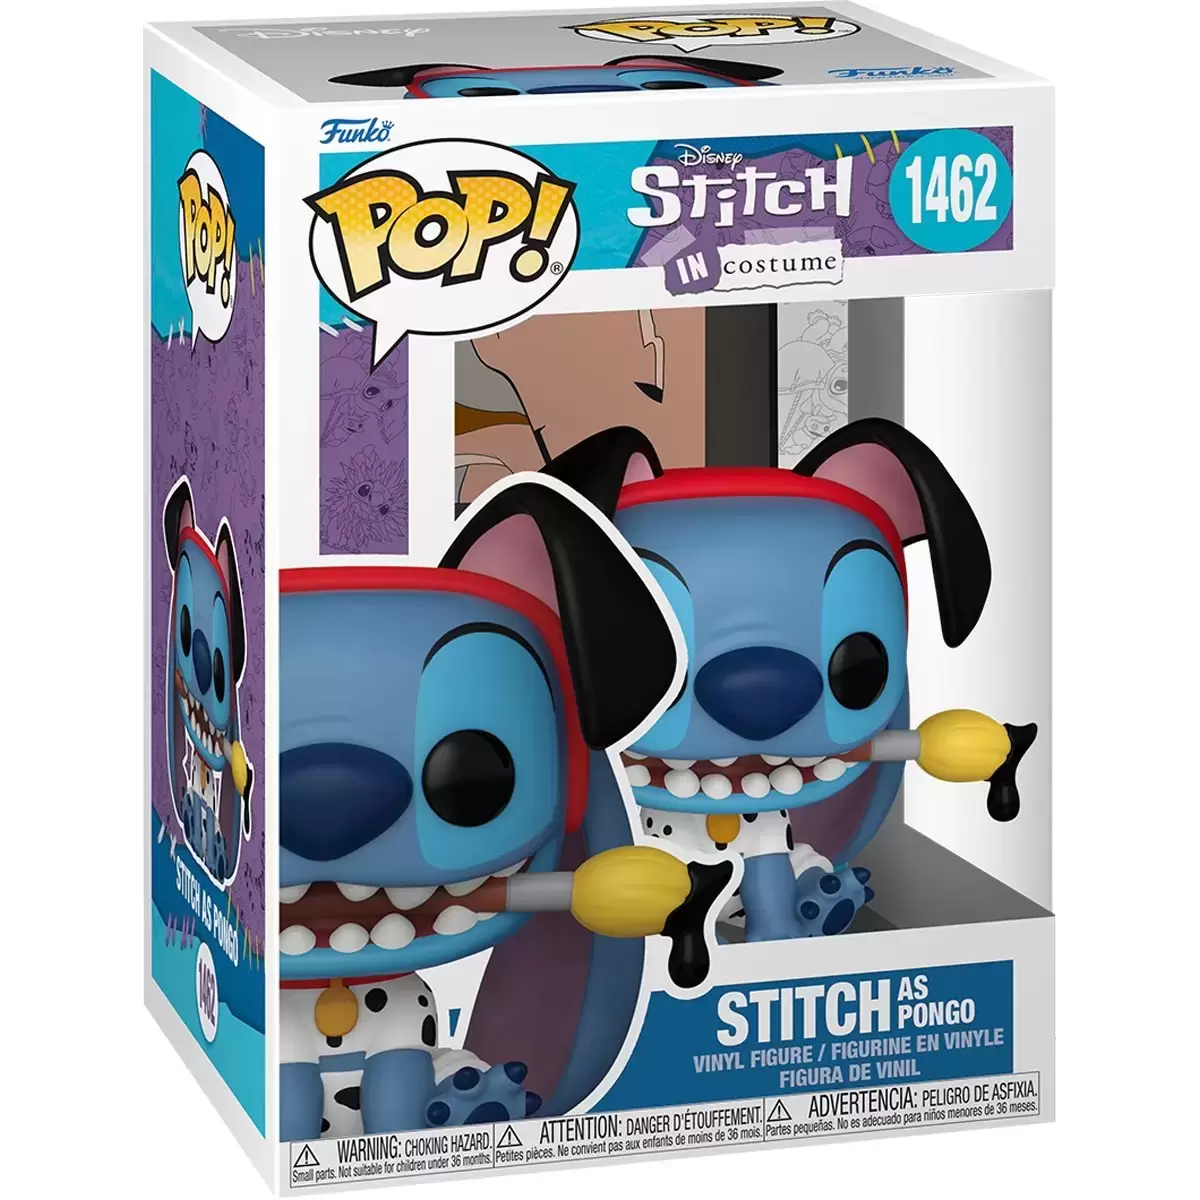 POP! Disney - Stitch in Costume - Stitch as Pongo